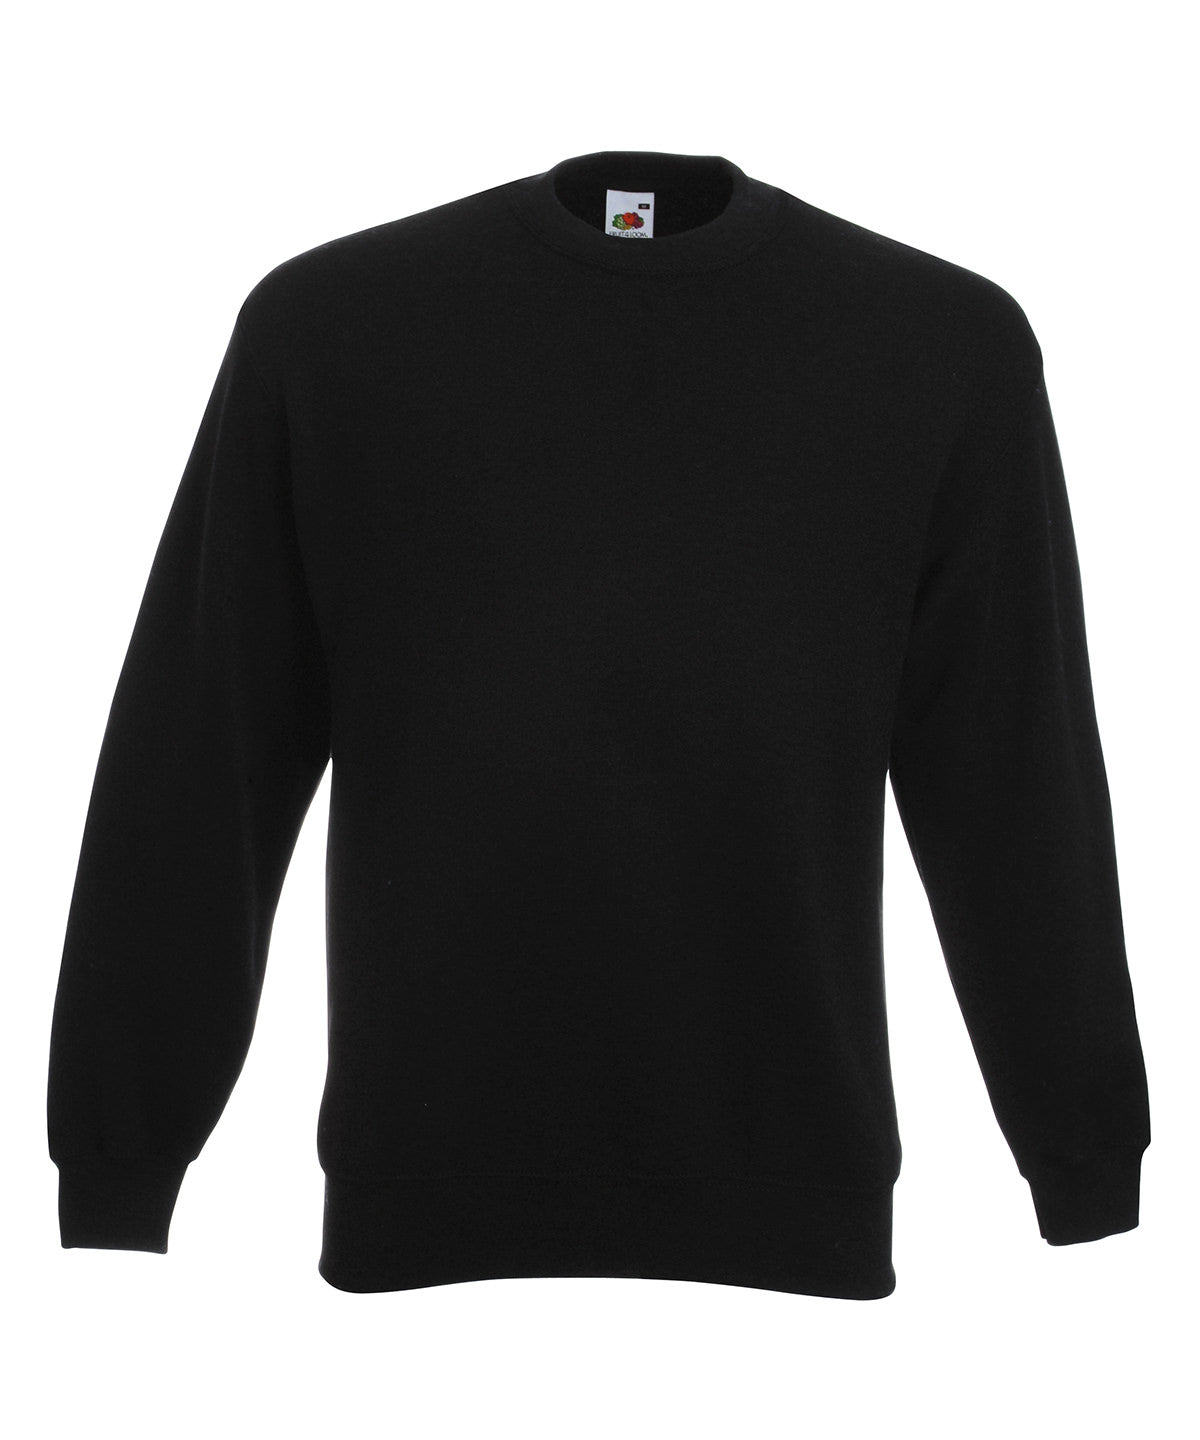 Personalised Sweatshirts - Black Fruit of the Loom Premium 70/30 set-in sweatshirt